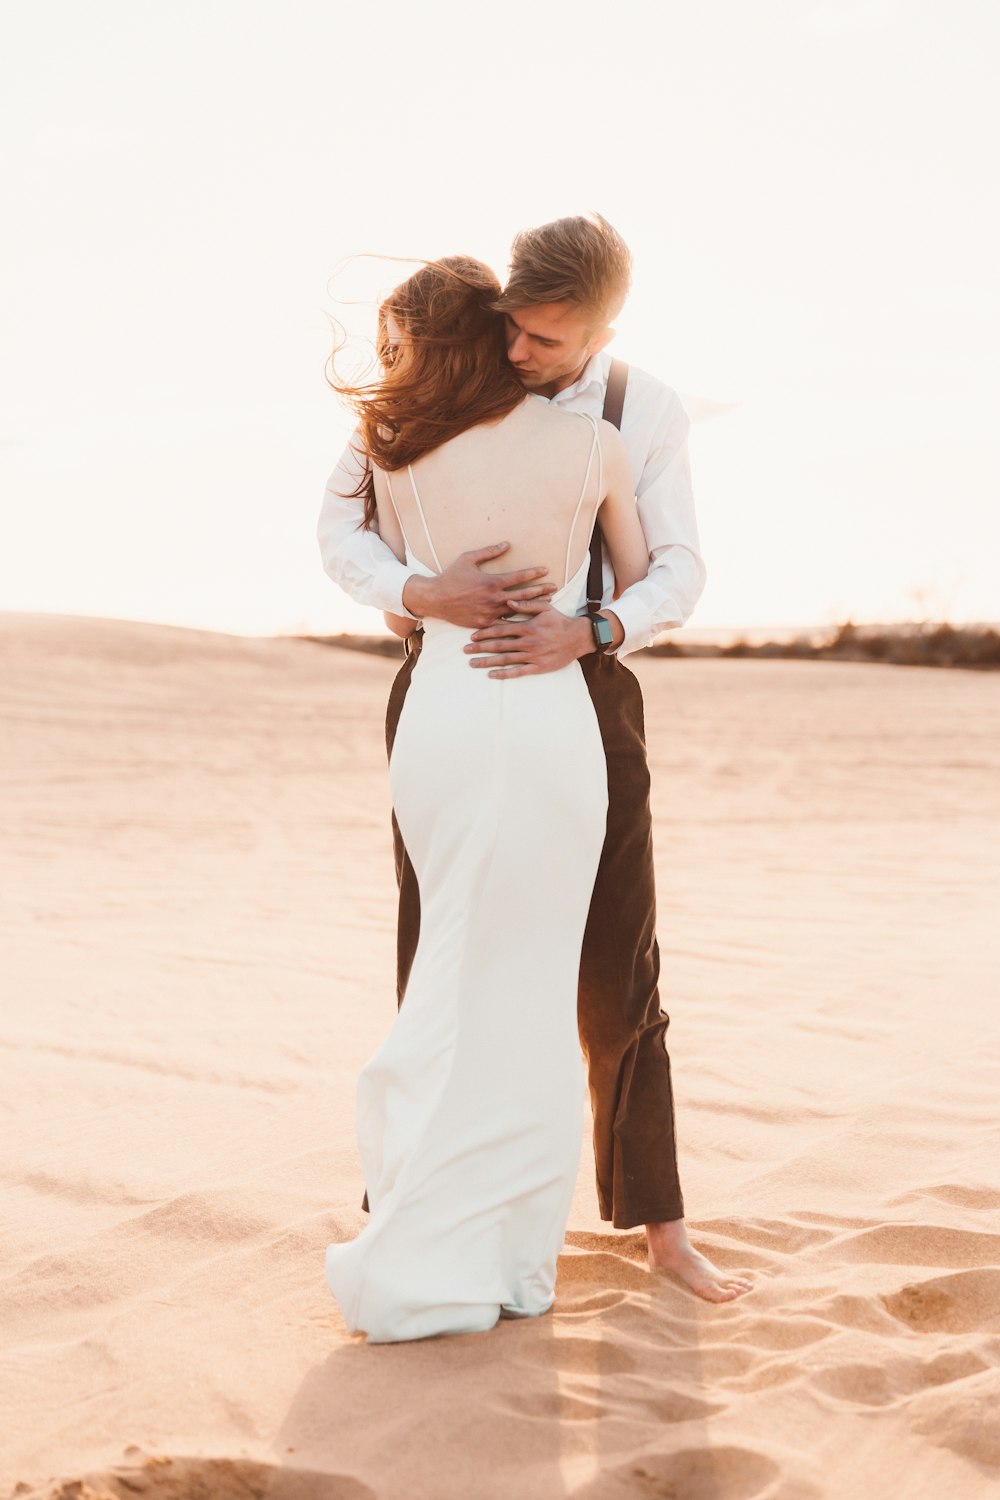 couple hugging on desert sand